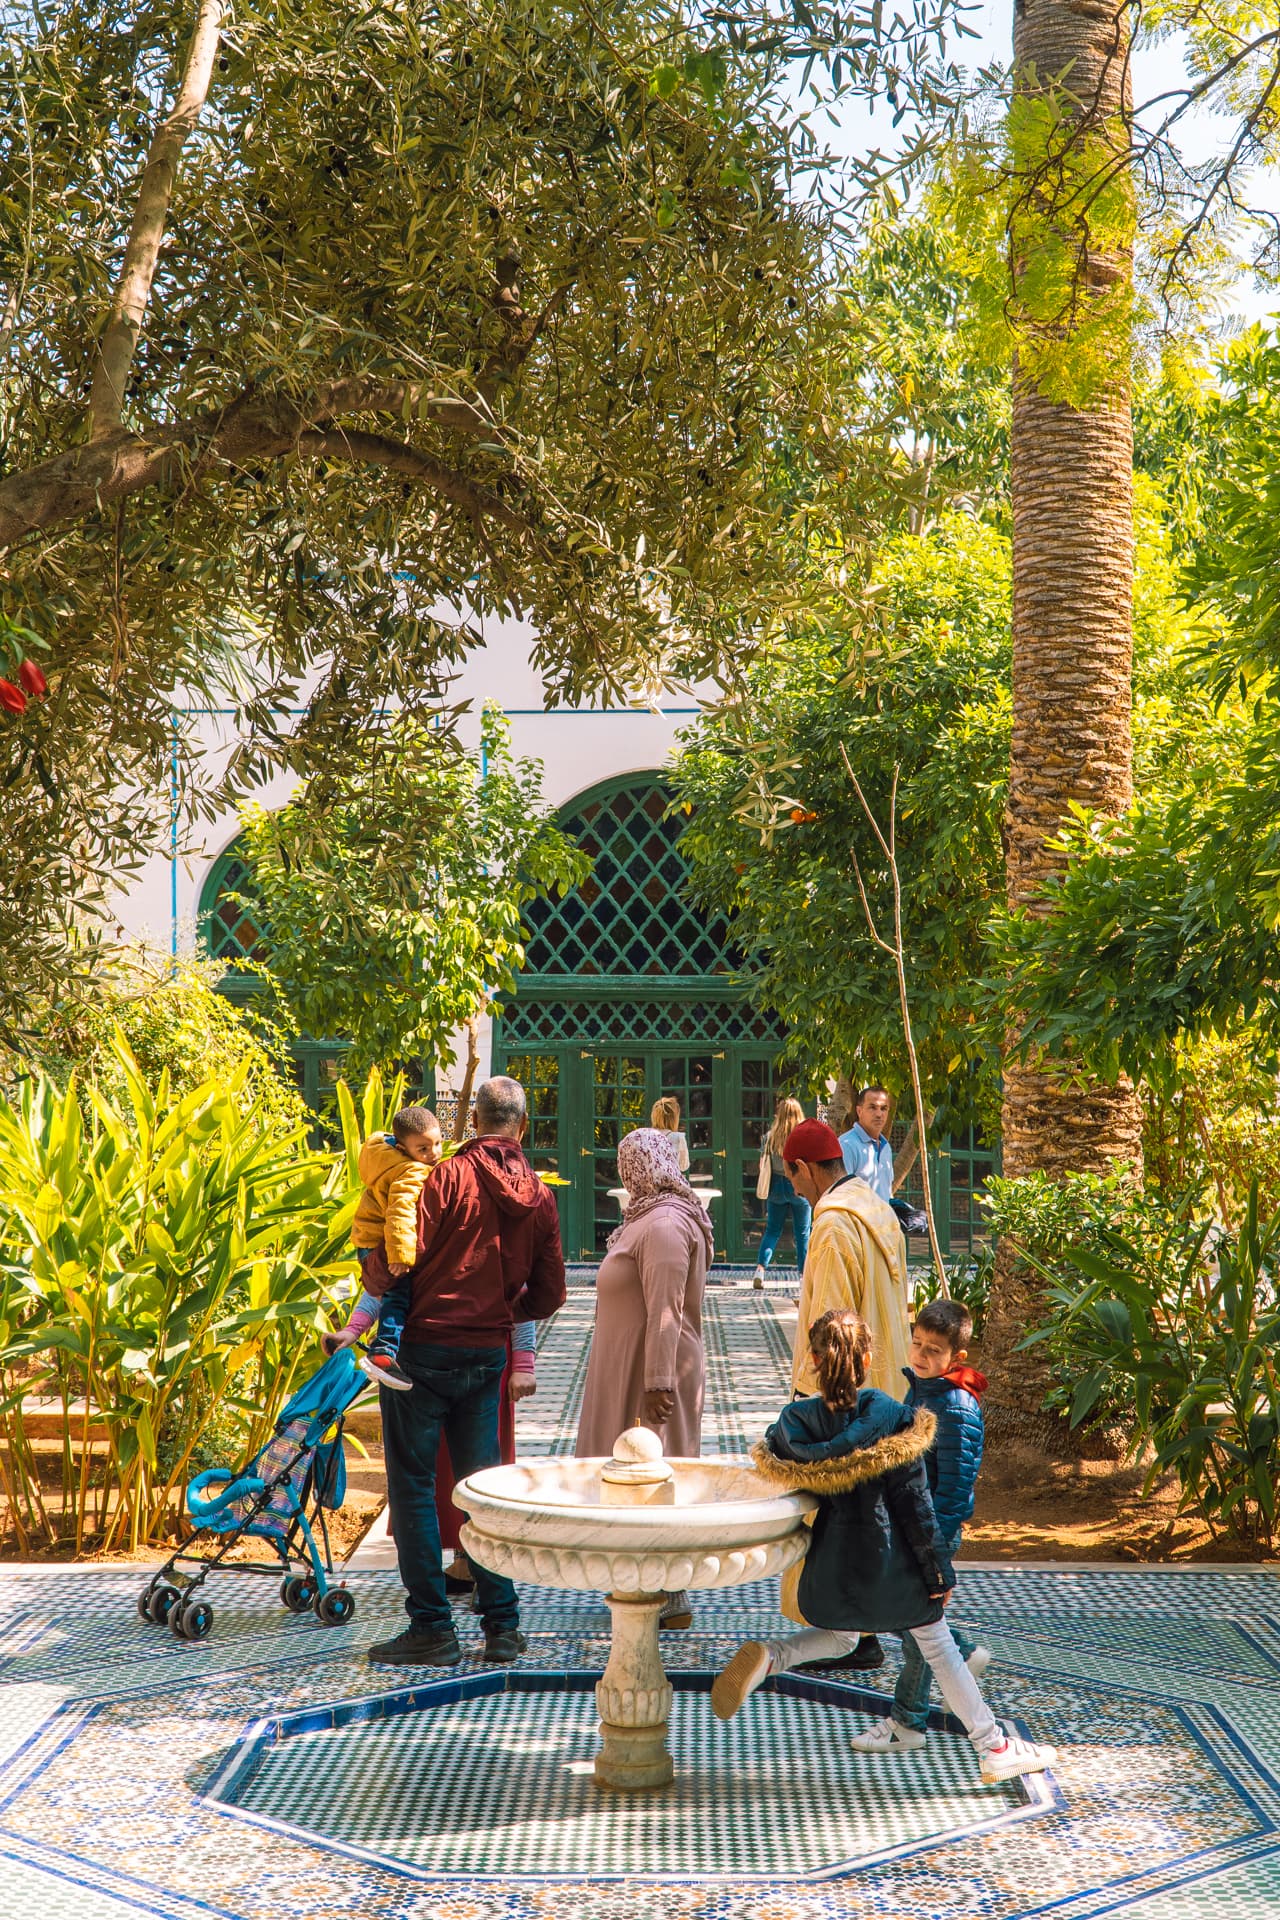 Ogród w Marrakeszu | Plan wyjazdu do Maroko